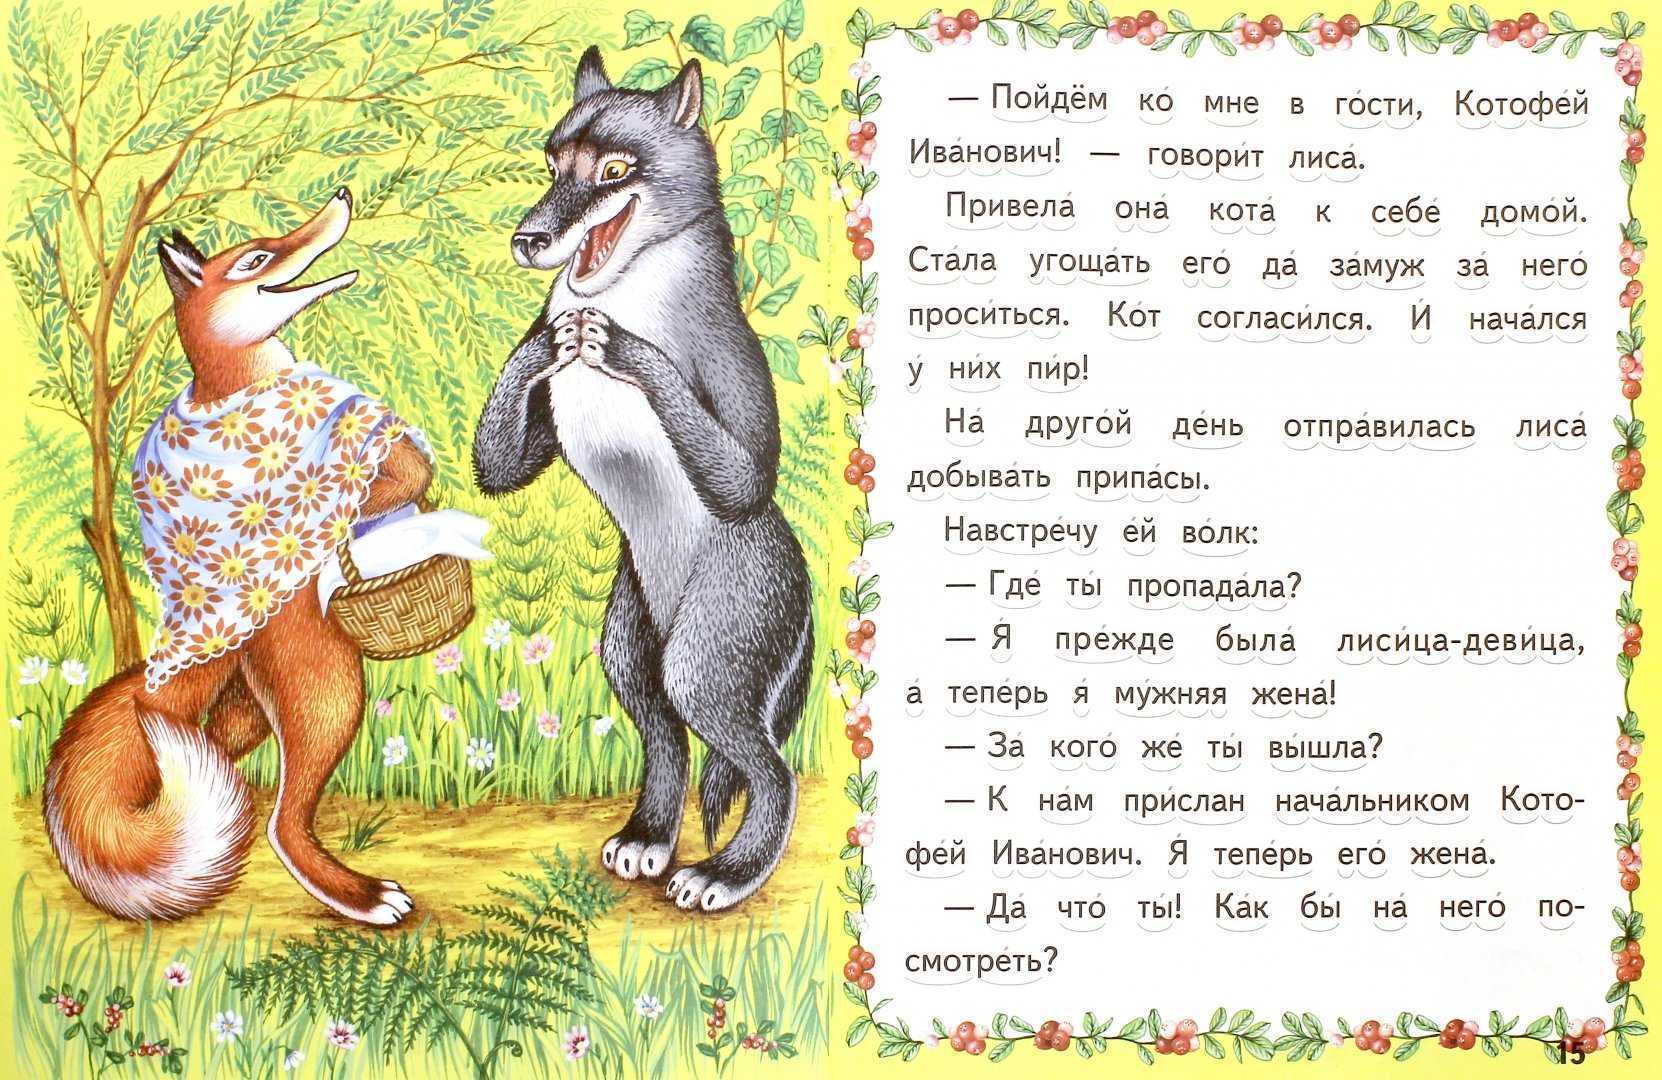 Кот и лиса - русские сказки: читать с картинками, иллюстрациями - сказка dy9.ru